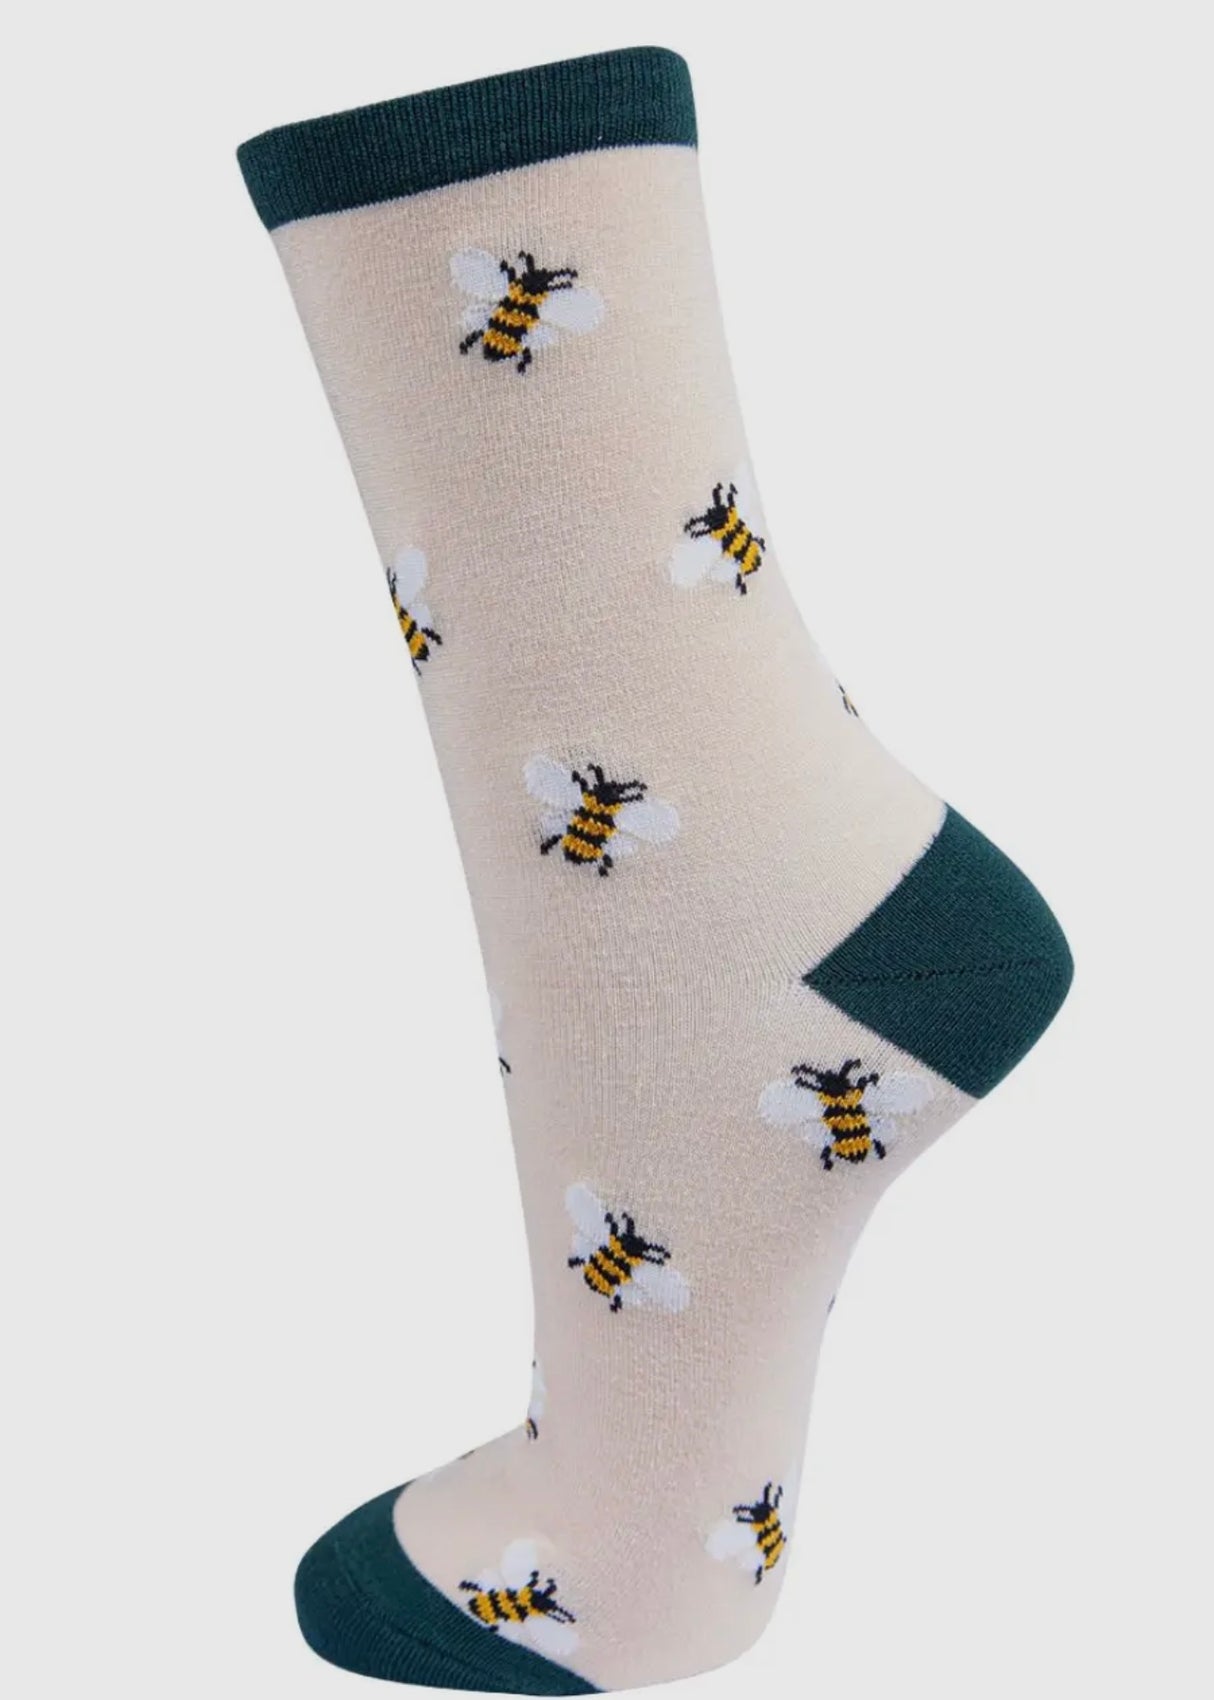 Bumble Bee Bamboo Socks